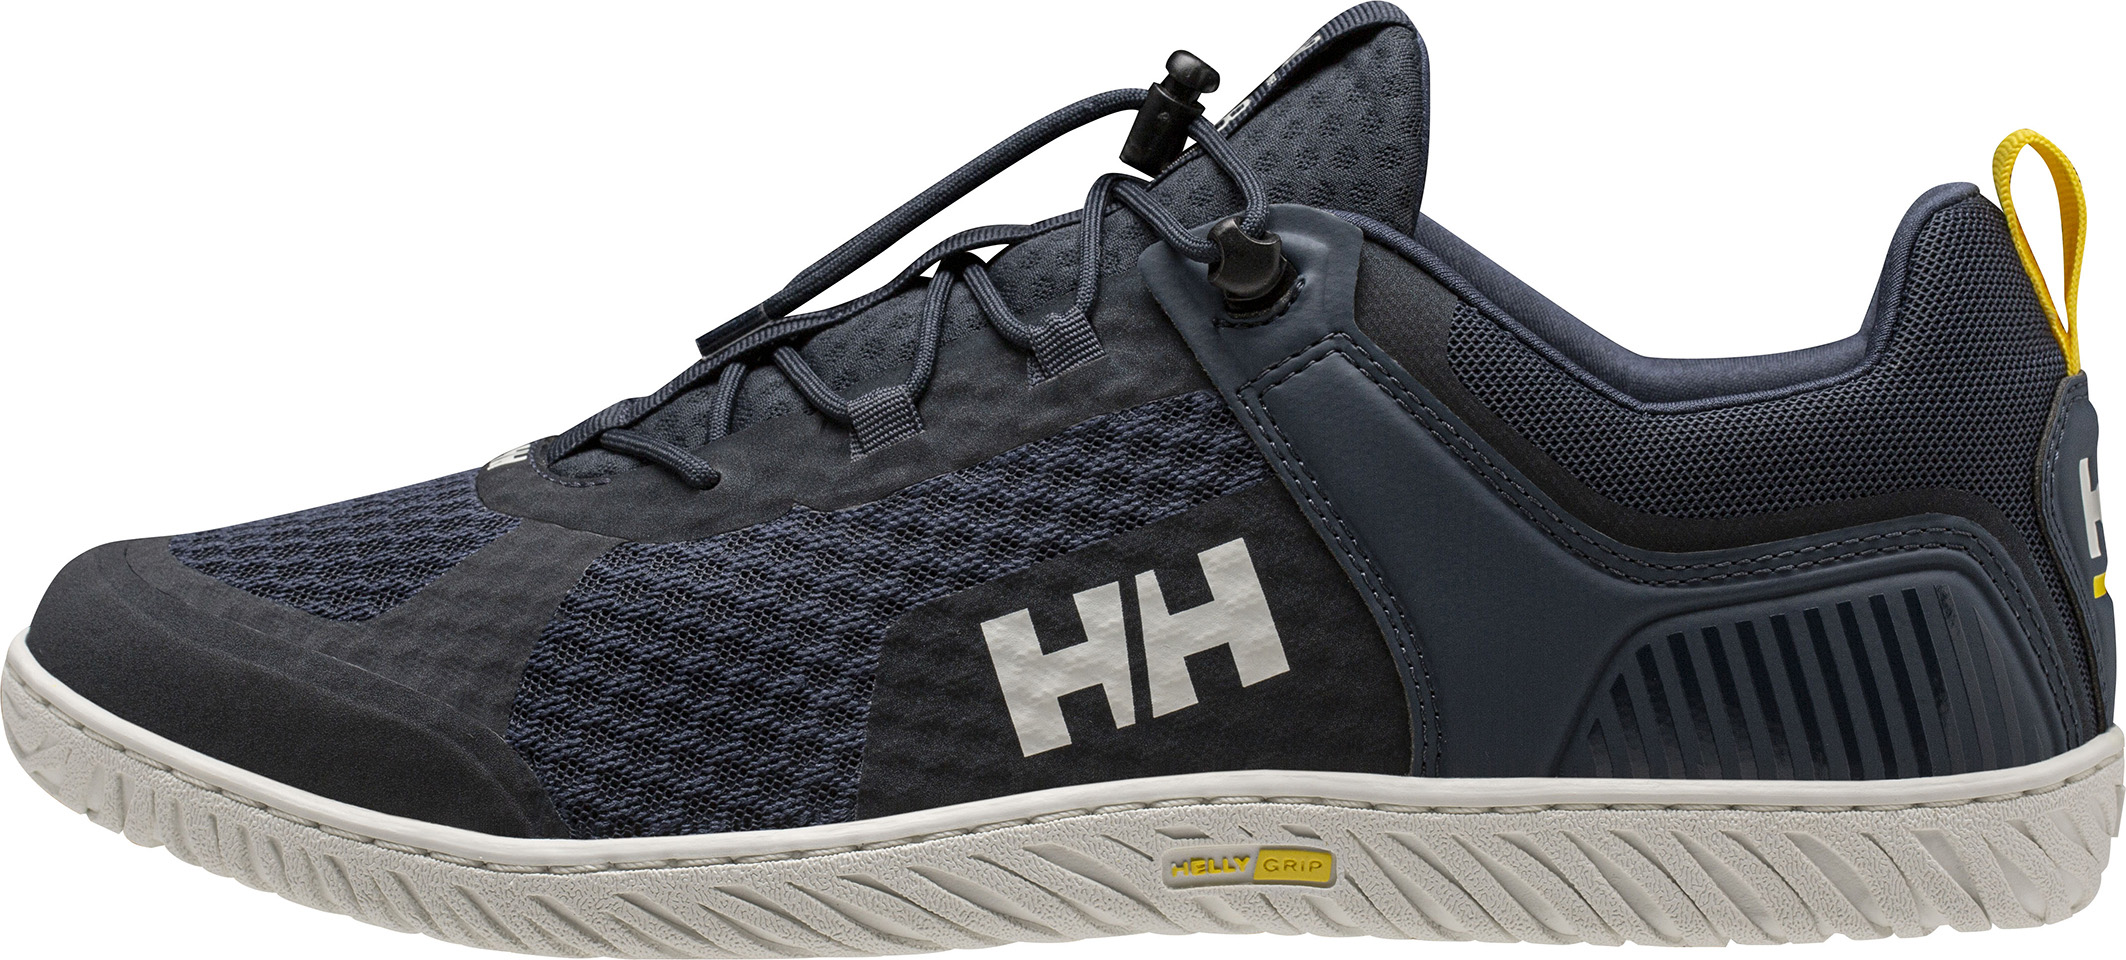 Helly Hansen lidera el sector náutico con la HP Foil V2: El calzado más ligero, transpirable y de secado ultra rápido para la vela